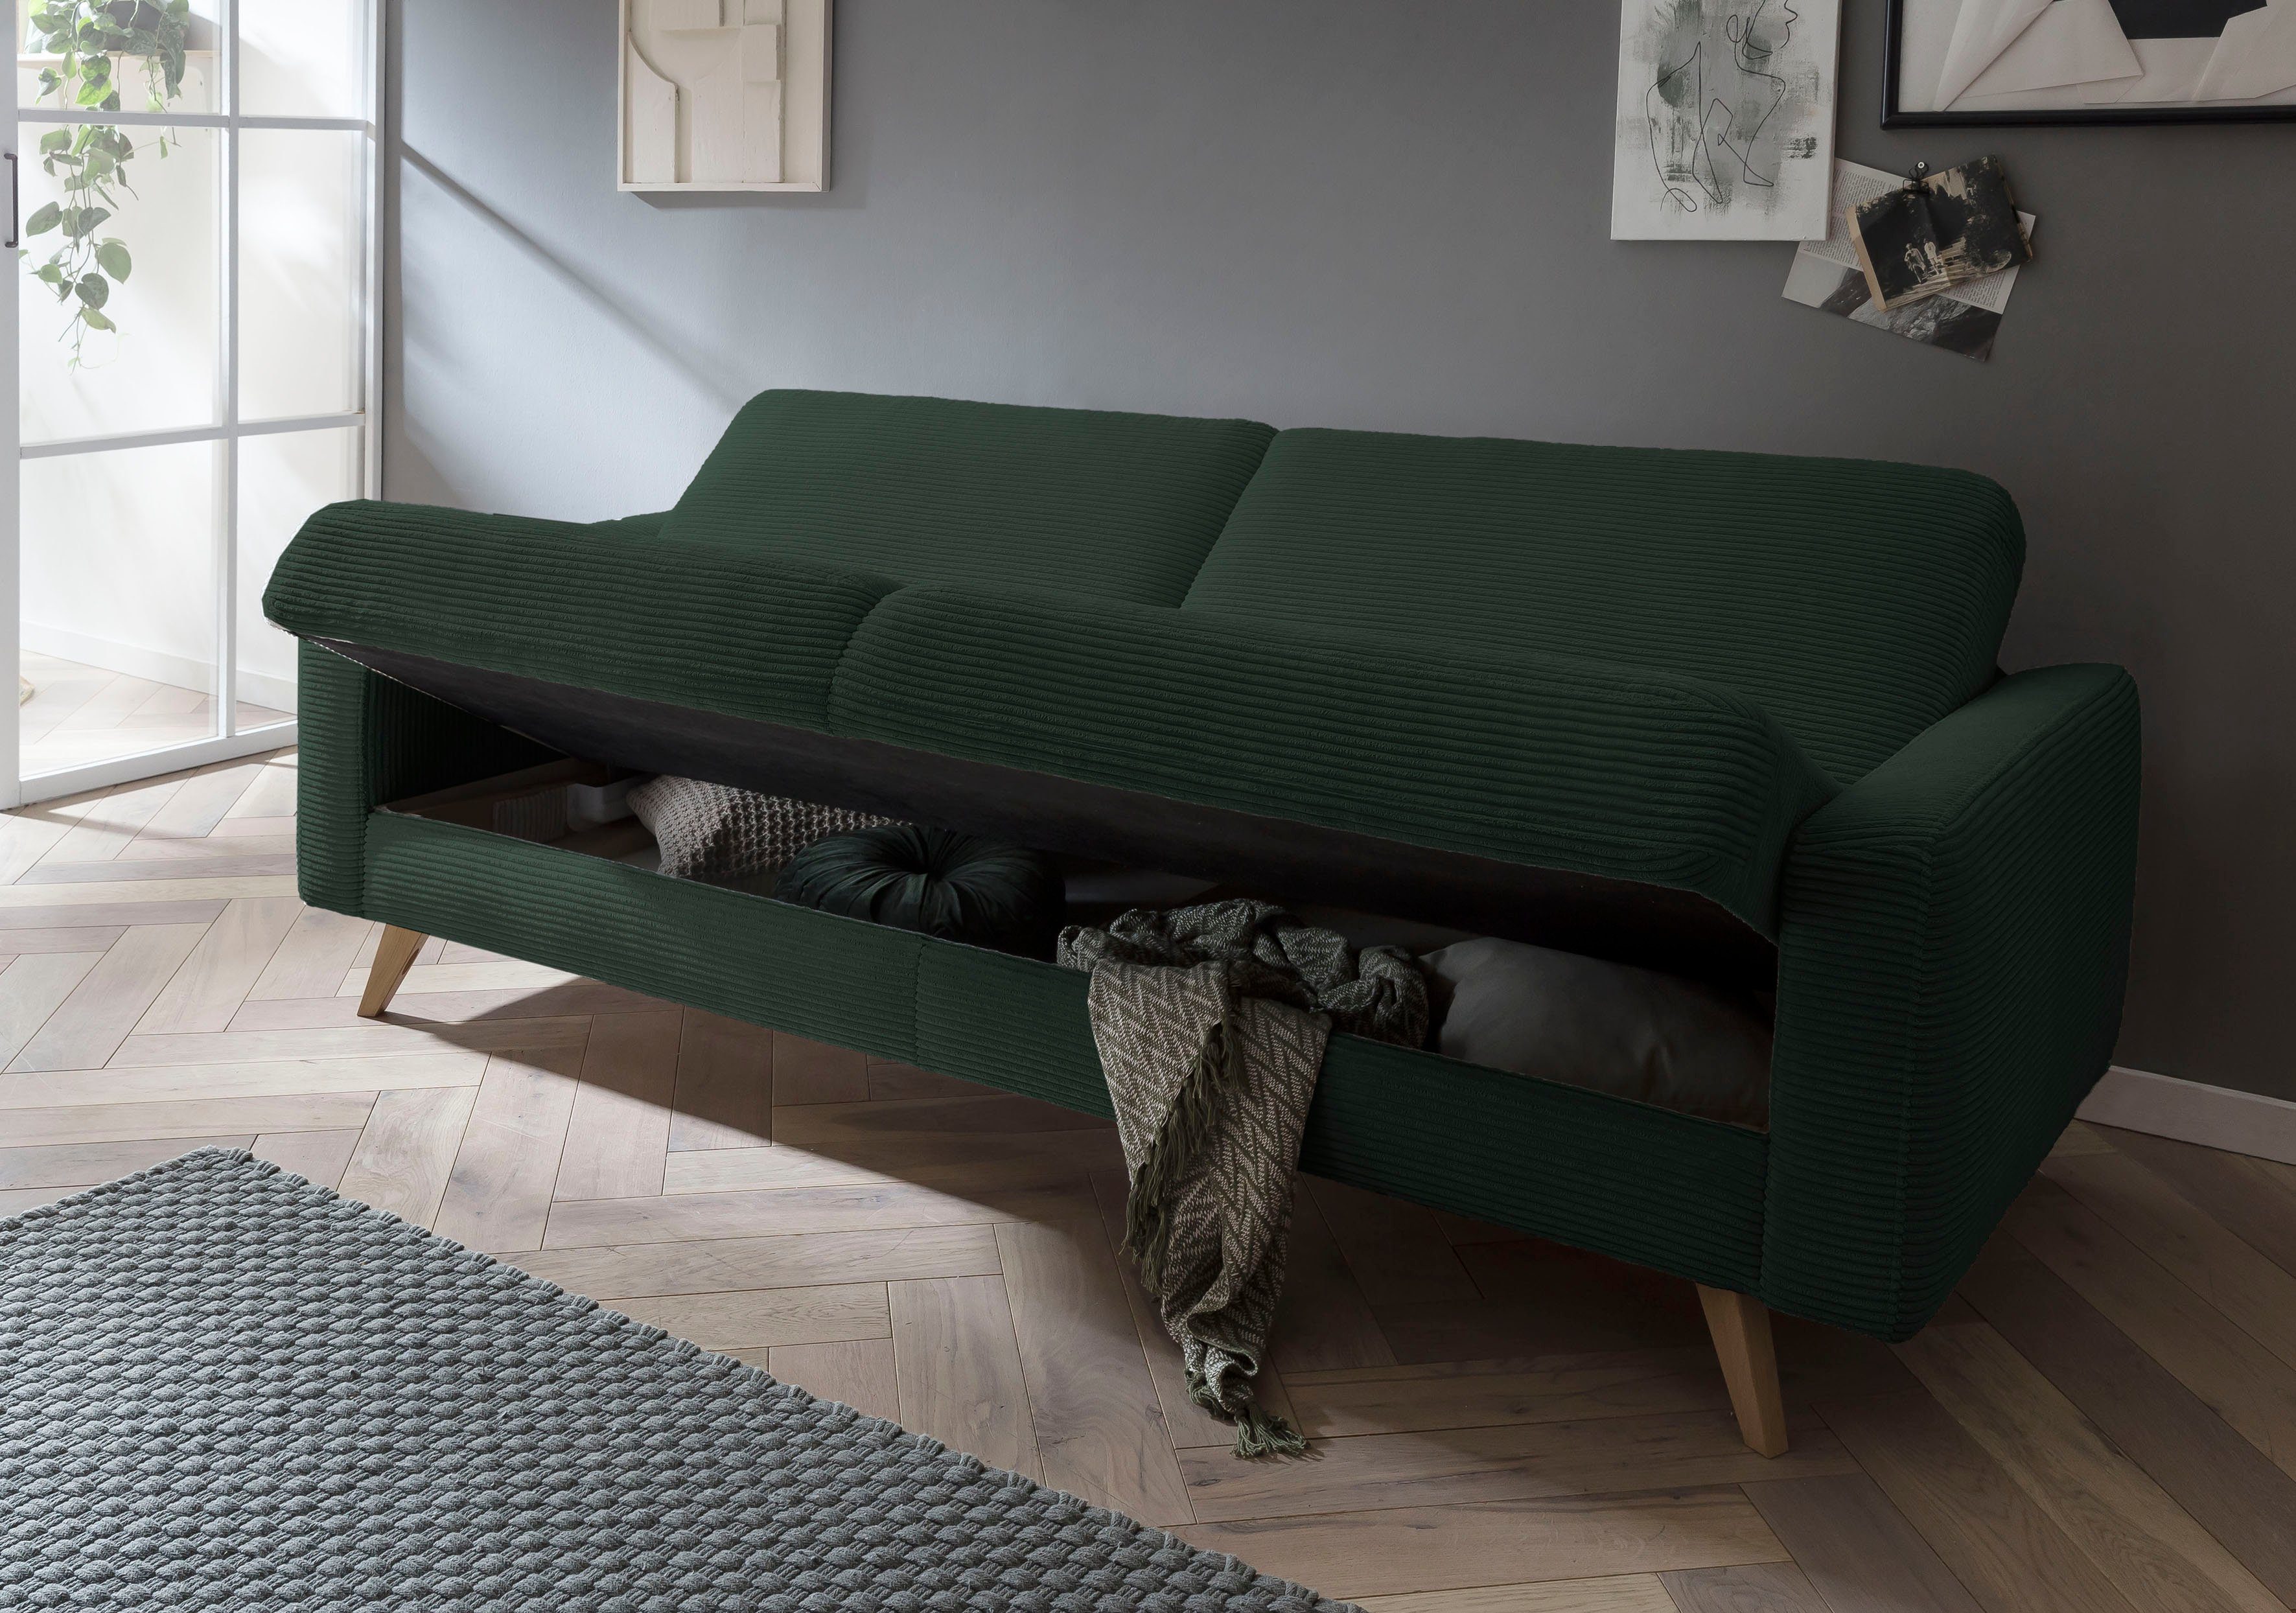 fashion und - Inklusive Bettfunktion exxpo pine Samso, sofa Bettkasten 3-Sitzer